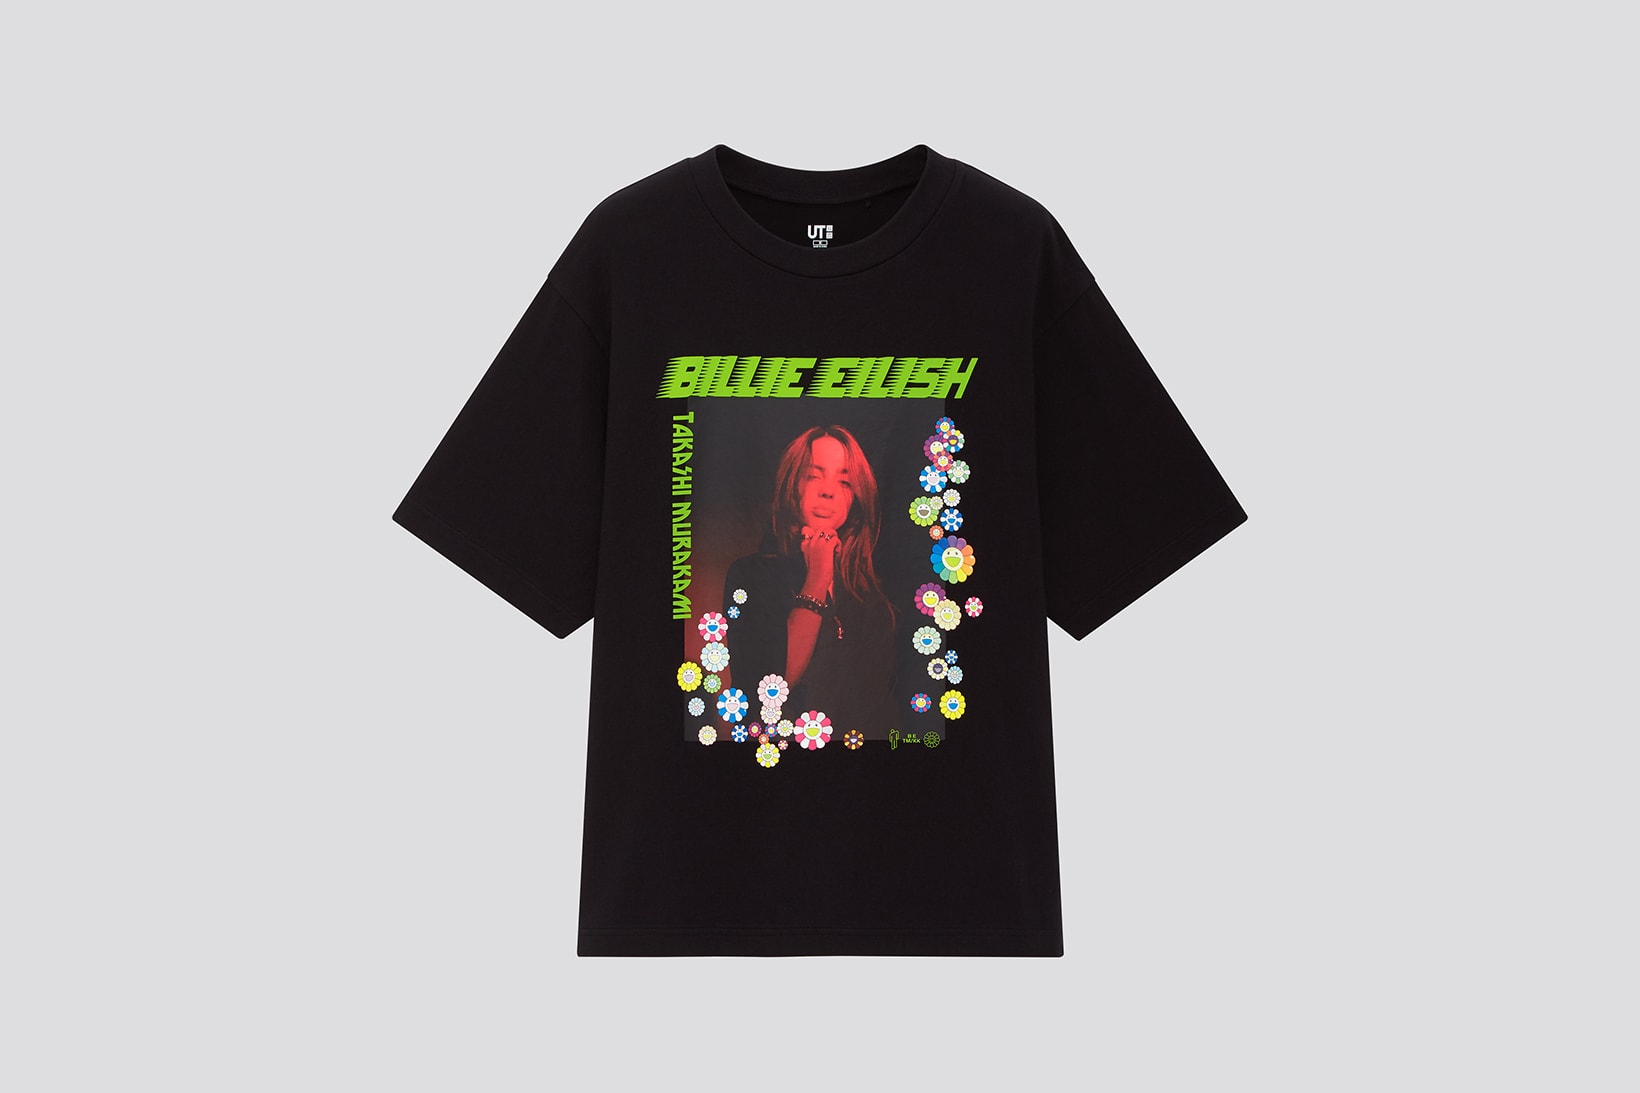 uniqlo ut billie eilish takashi murakami collaboration graphic t shirts womens mens kids